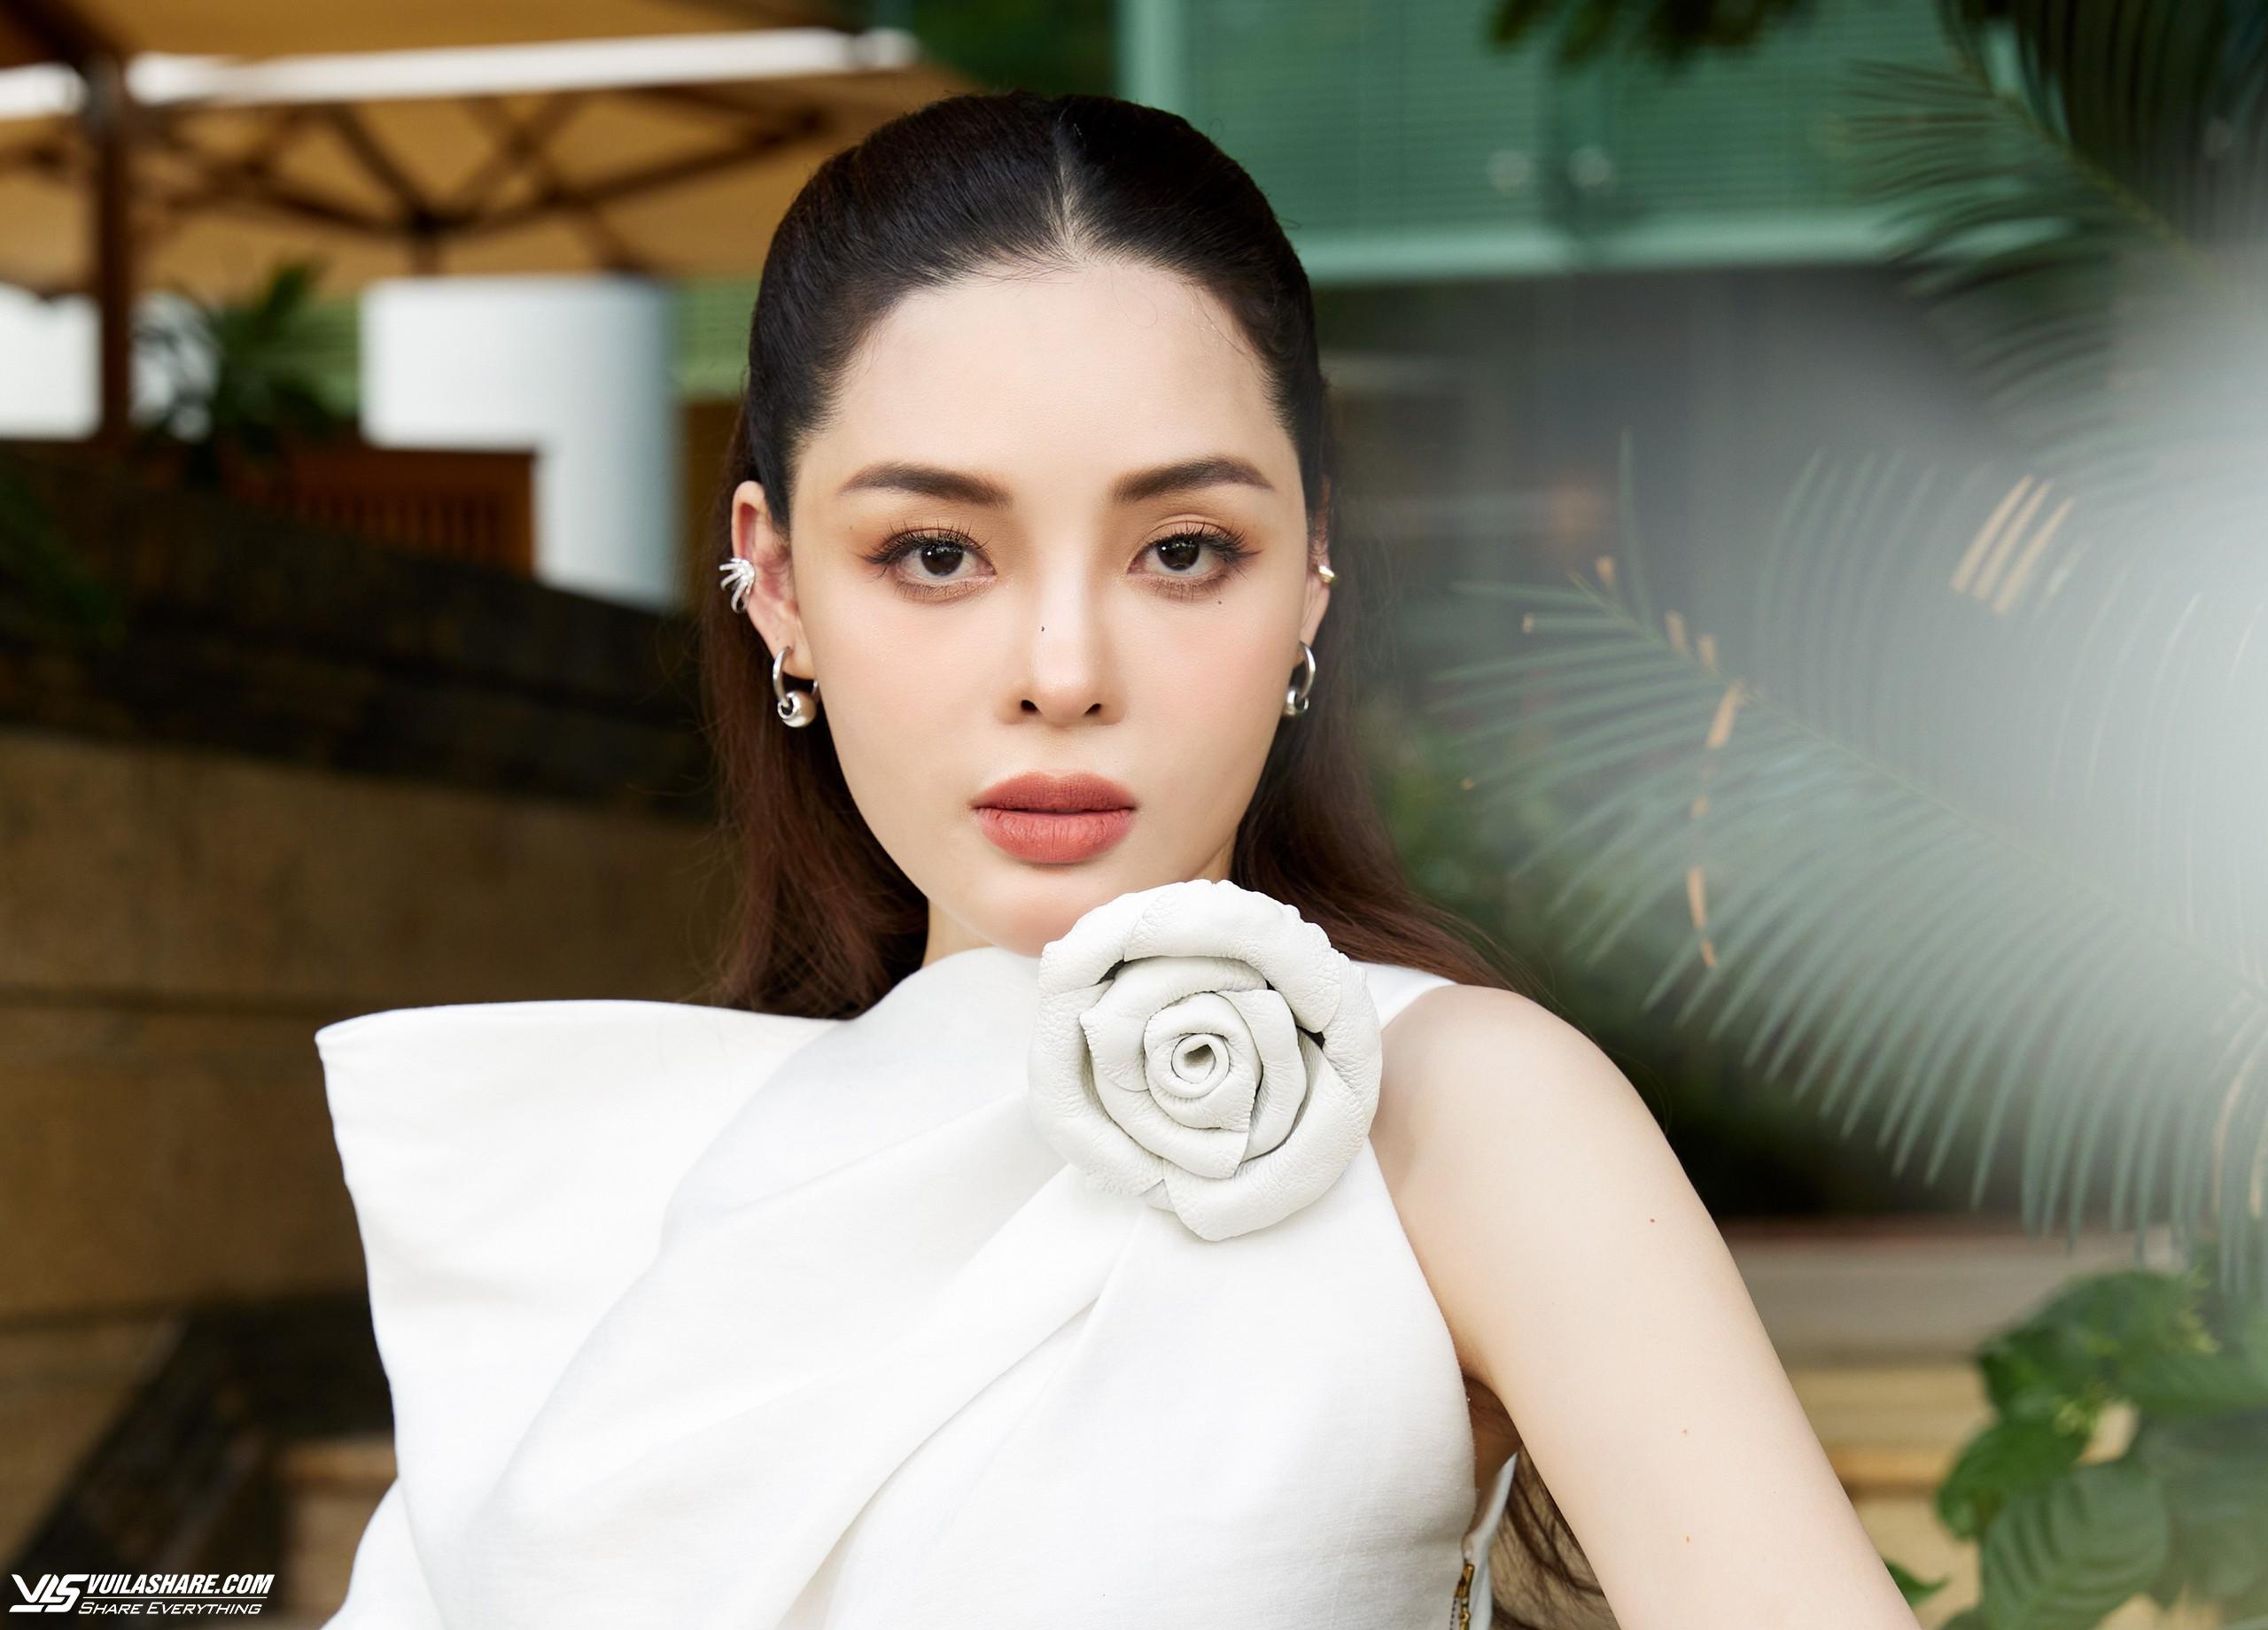 Hoa hậu Phương Hà: Tìm chỗ dựa tài chính không xấu, nhưng mình phải có giá trị- Ảnh 1.